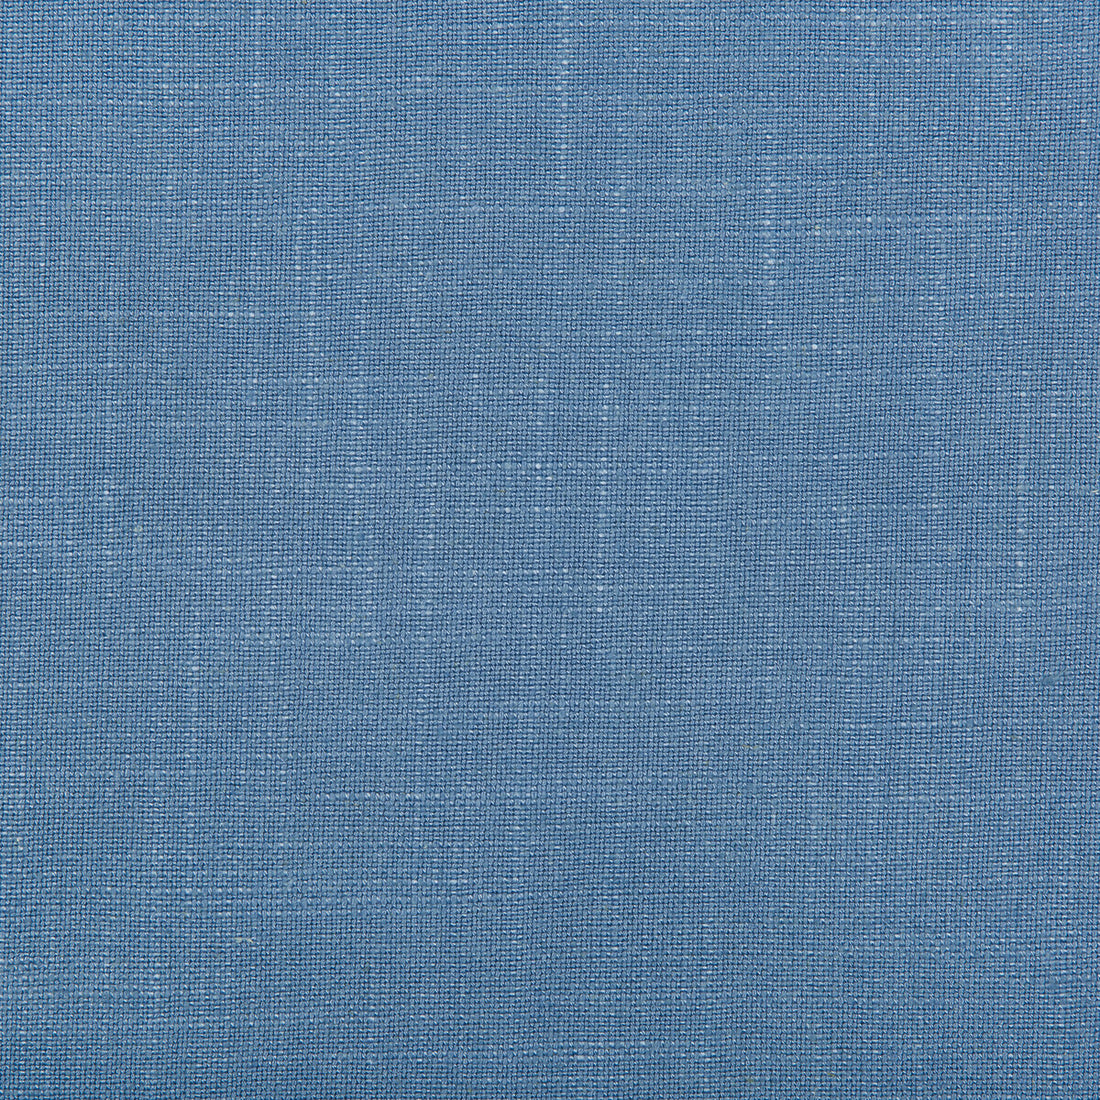 Aura fabric in cadet color - pattern 35520.15.0 - by Kravet Design